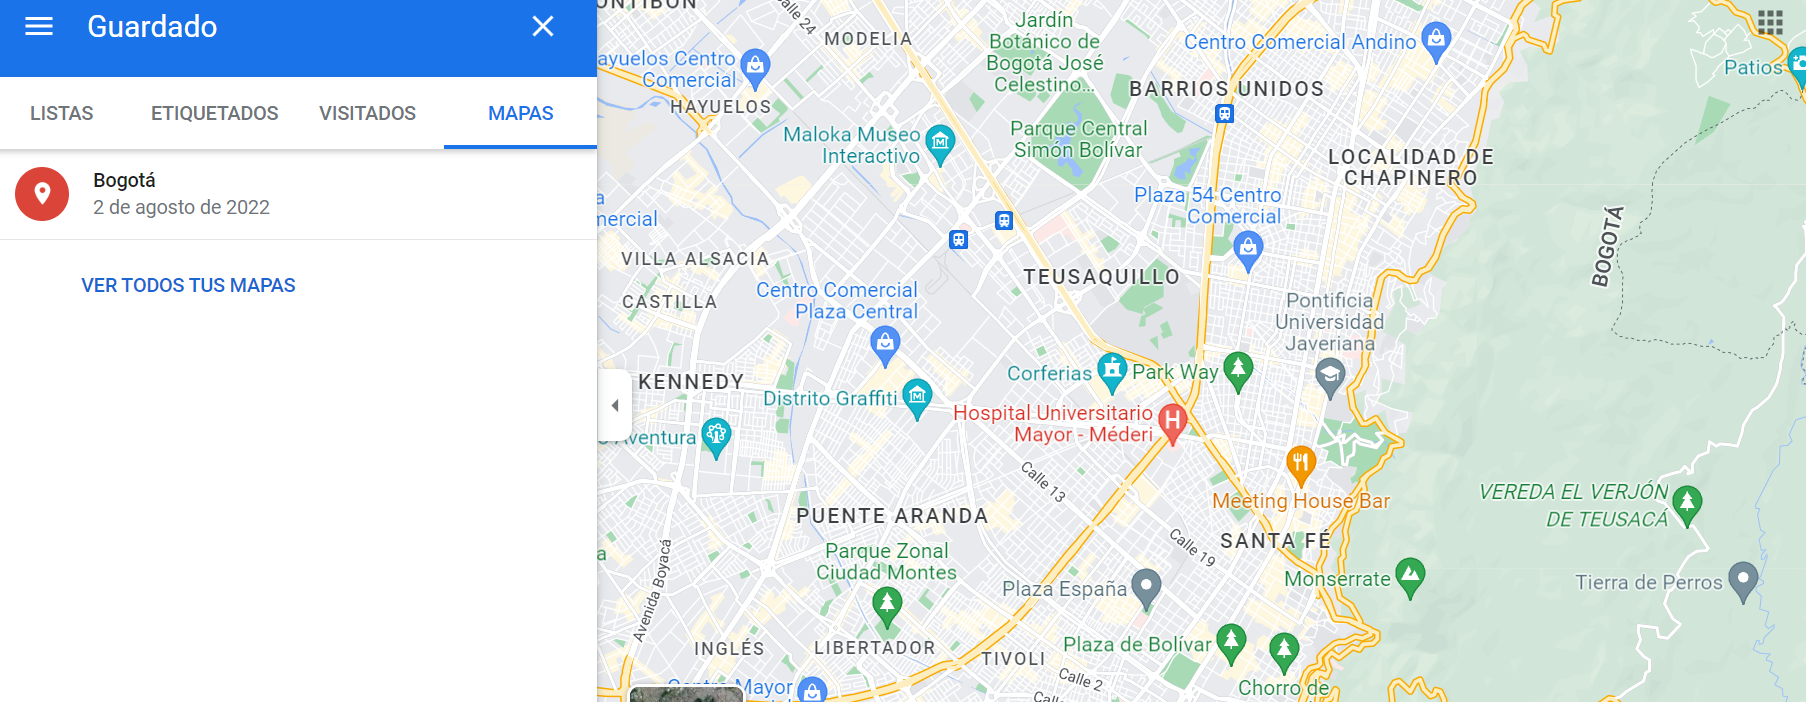 Como crear un mapa en Google Maps